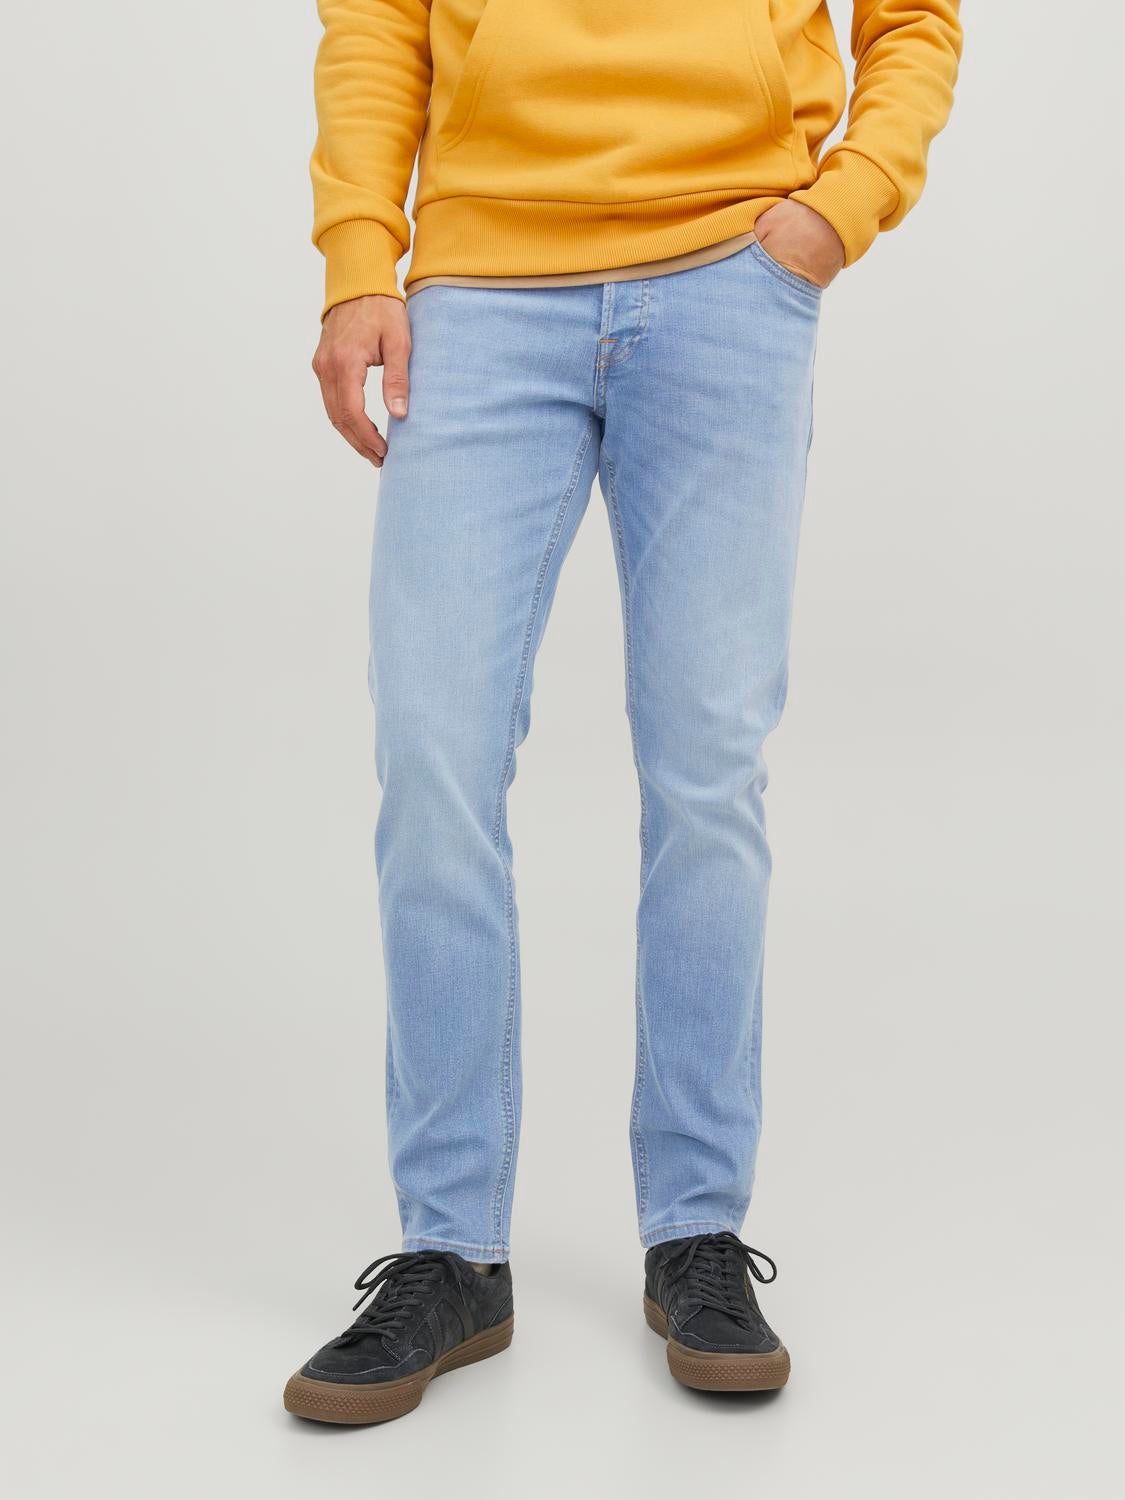 Light Blue Skinny Jeans for Men – Code 61